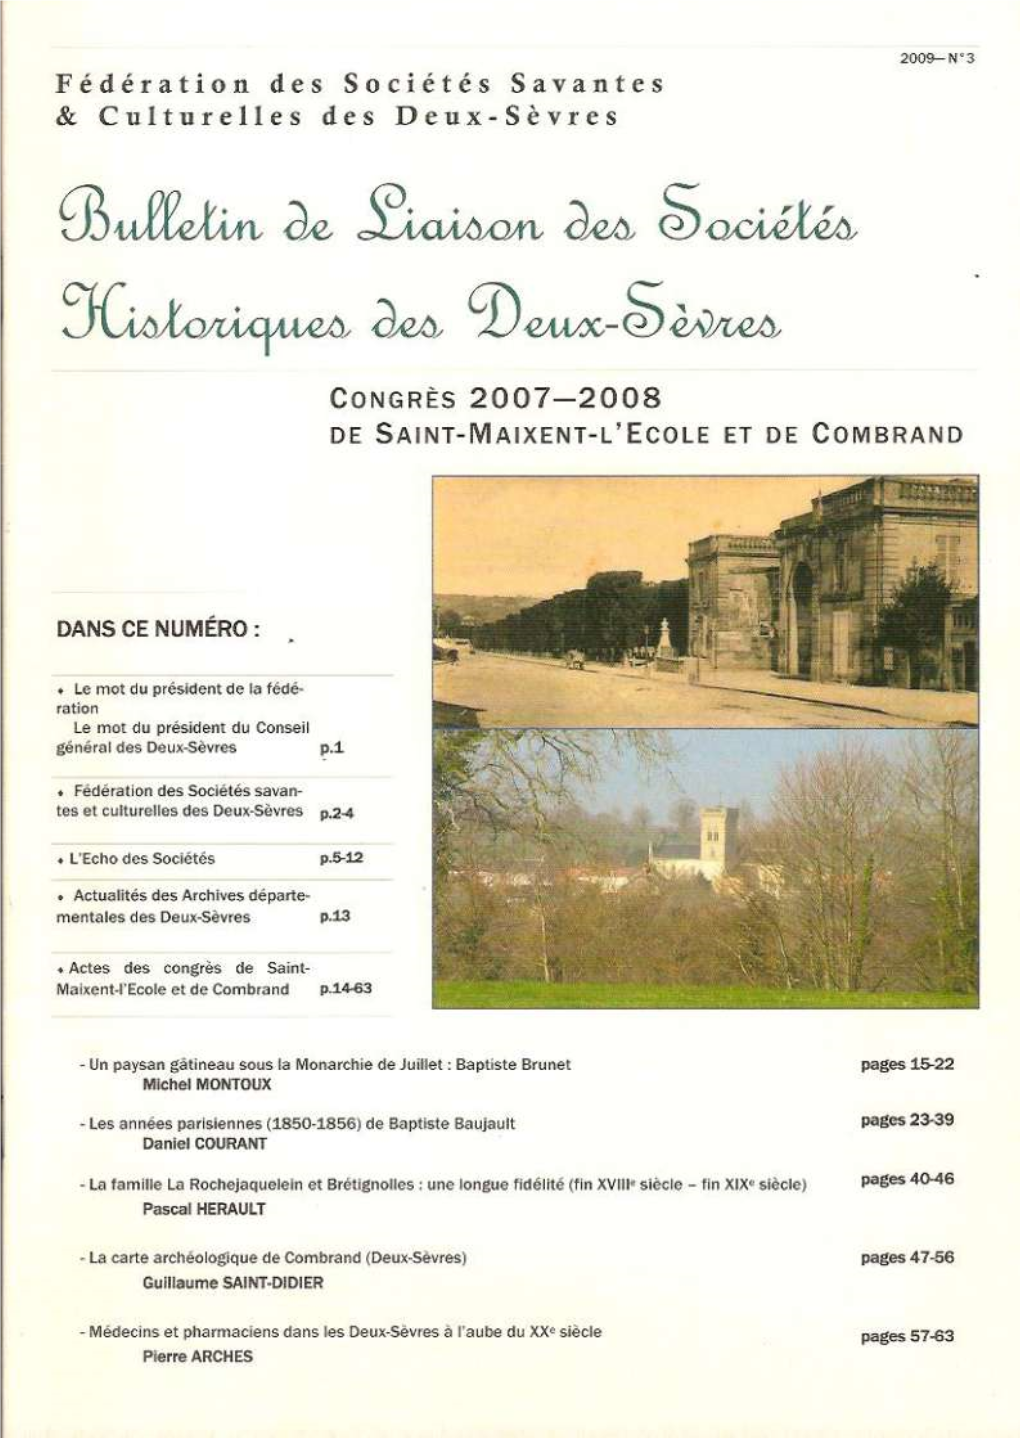 Bulletin De Liaison Des Sociétés Historiques Des Deux-Sèvres